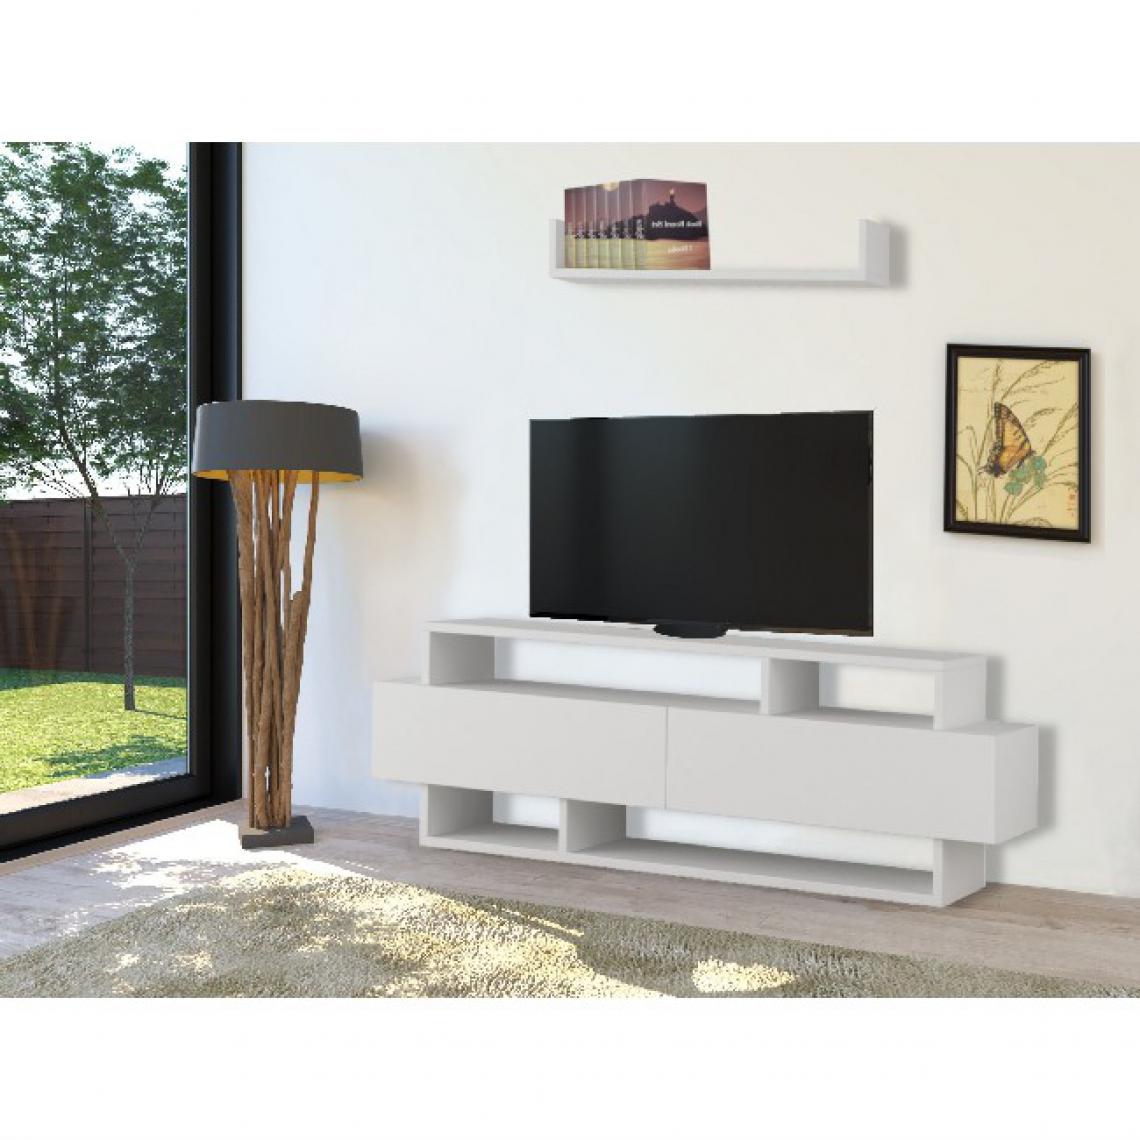 Homemania - HOMEMANIA Stand TV Rela - avec étagère, tablettes, portes - pour le salon, la salle de séjour - bois blanc, 125 x 30 x 42 cm - Meubles TV, Hi-Fi